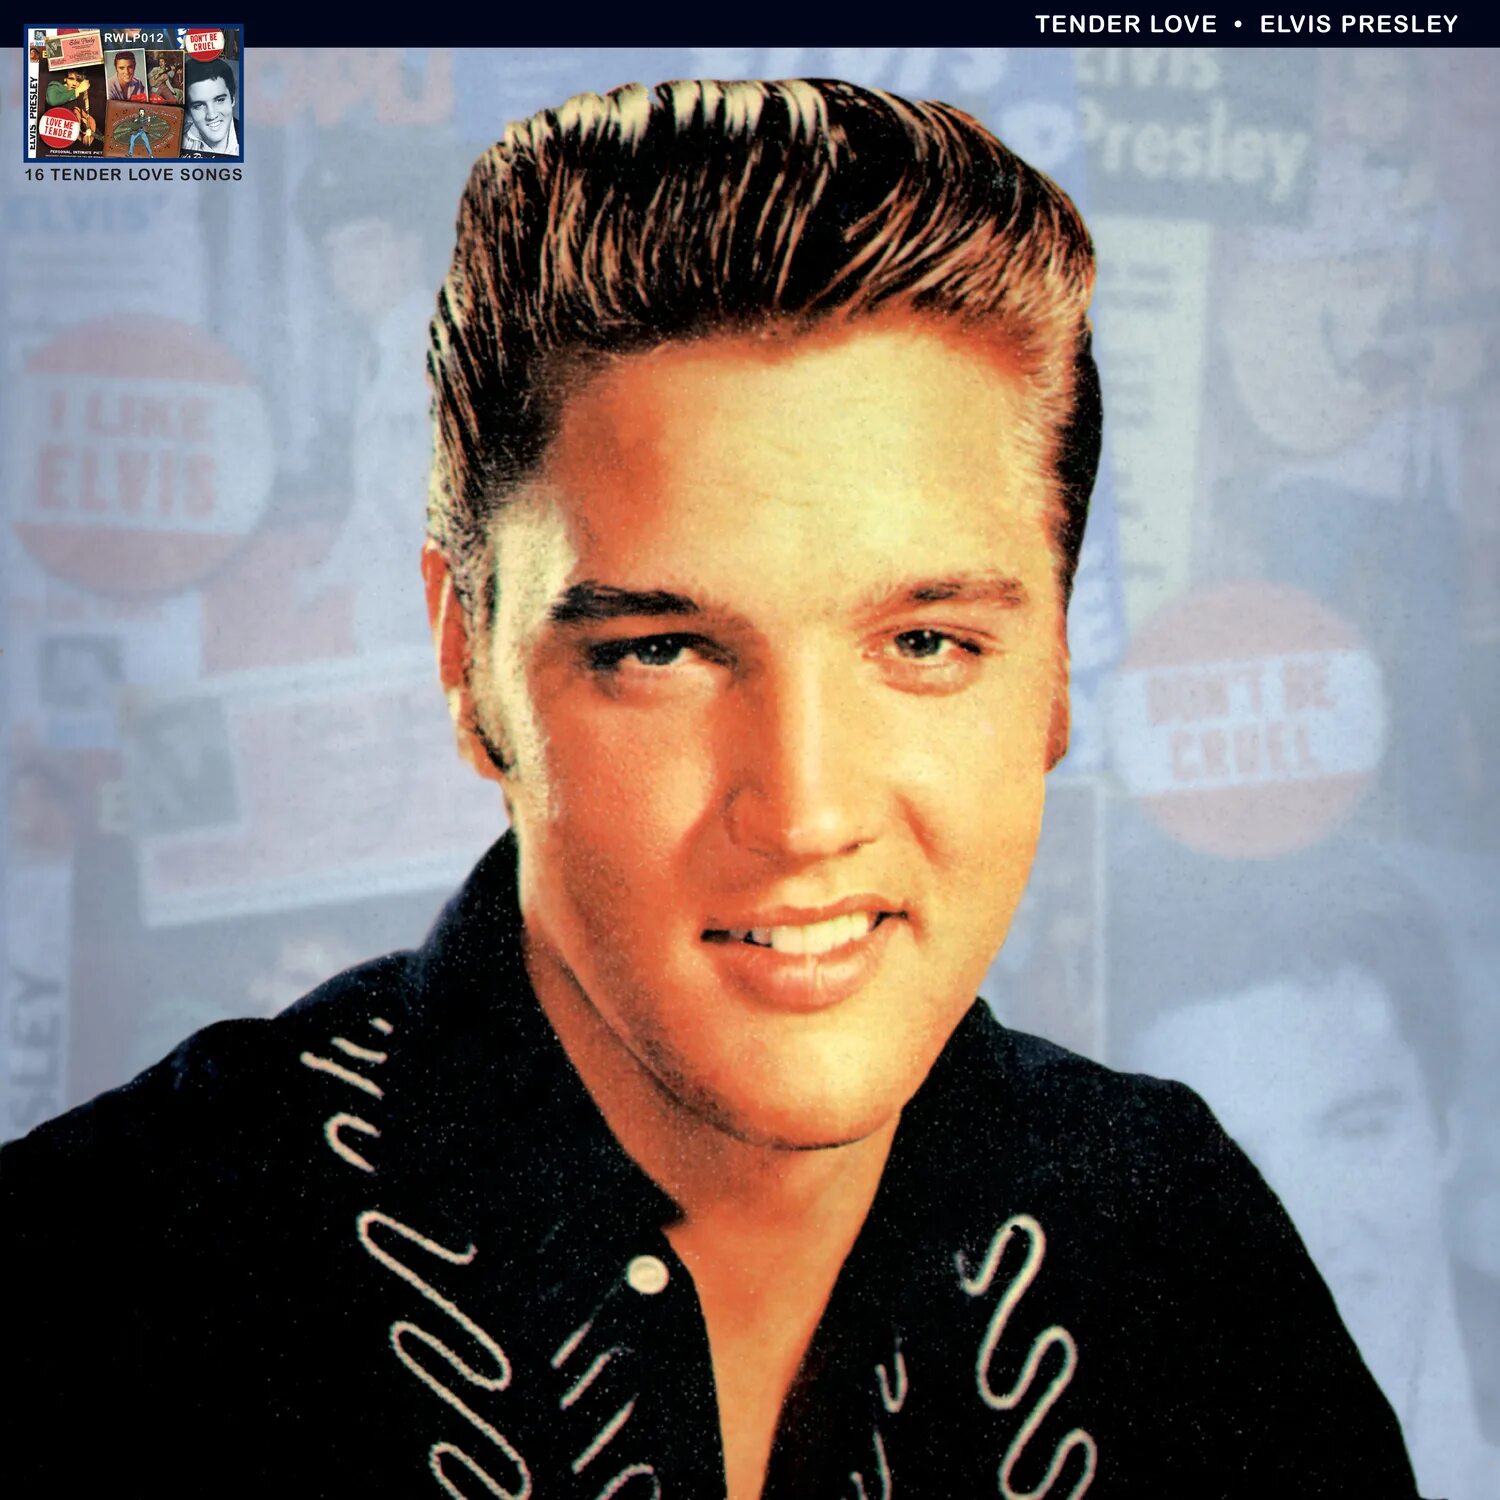 Elvis presley love me tender. Элвис Пресли фото loving you. Elvis Presley "Love Songs". Elvis Presley Love me tender album.